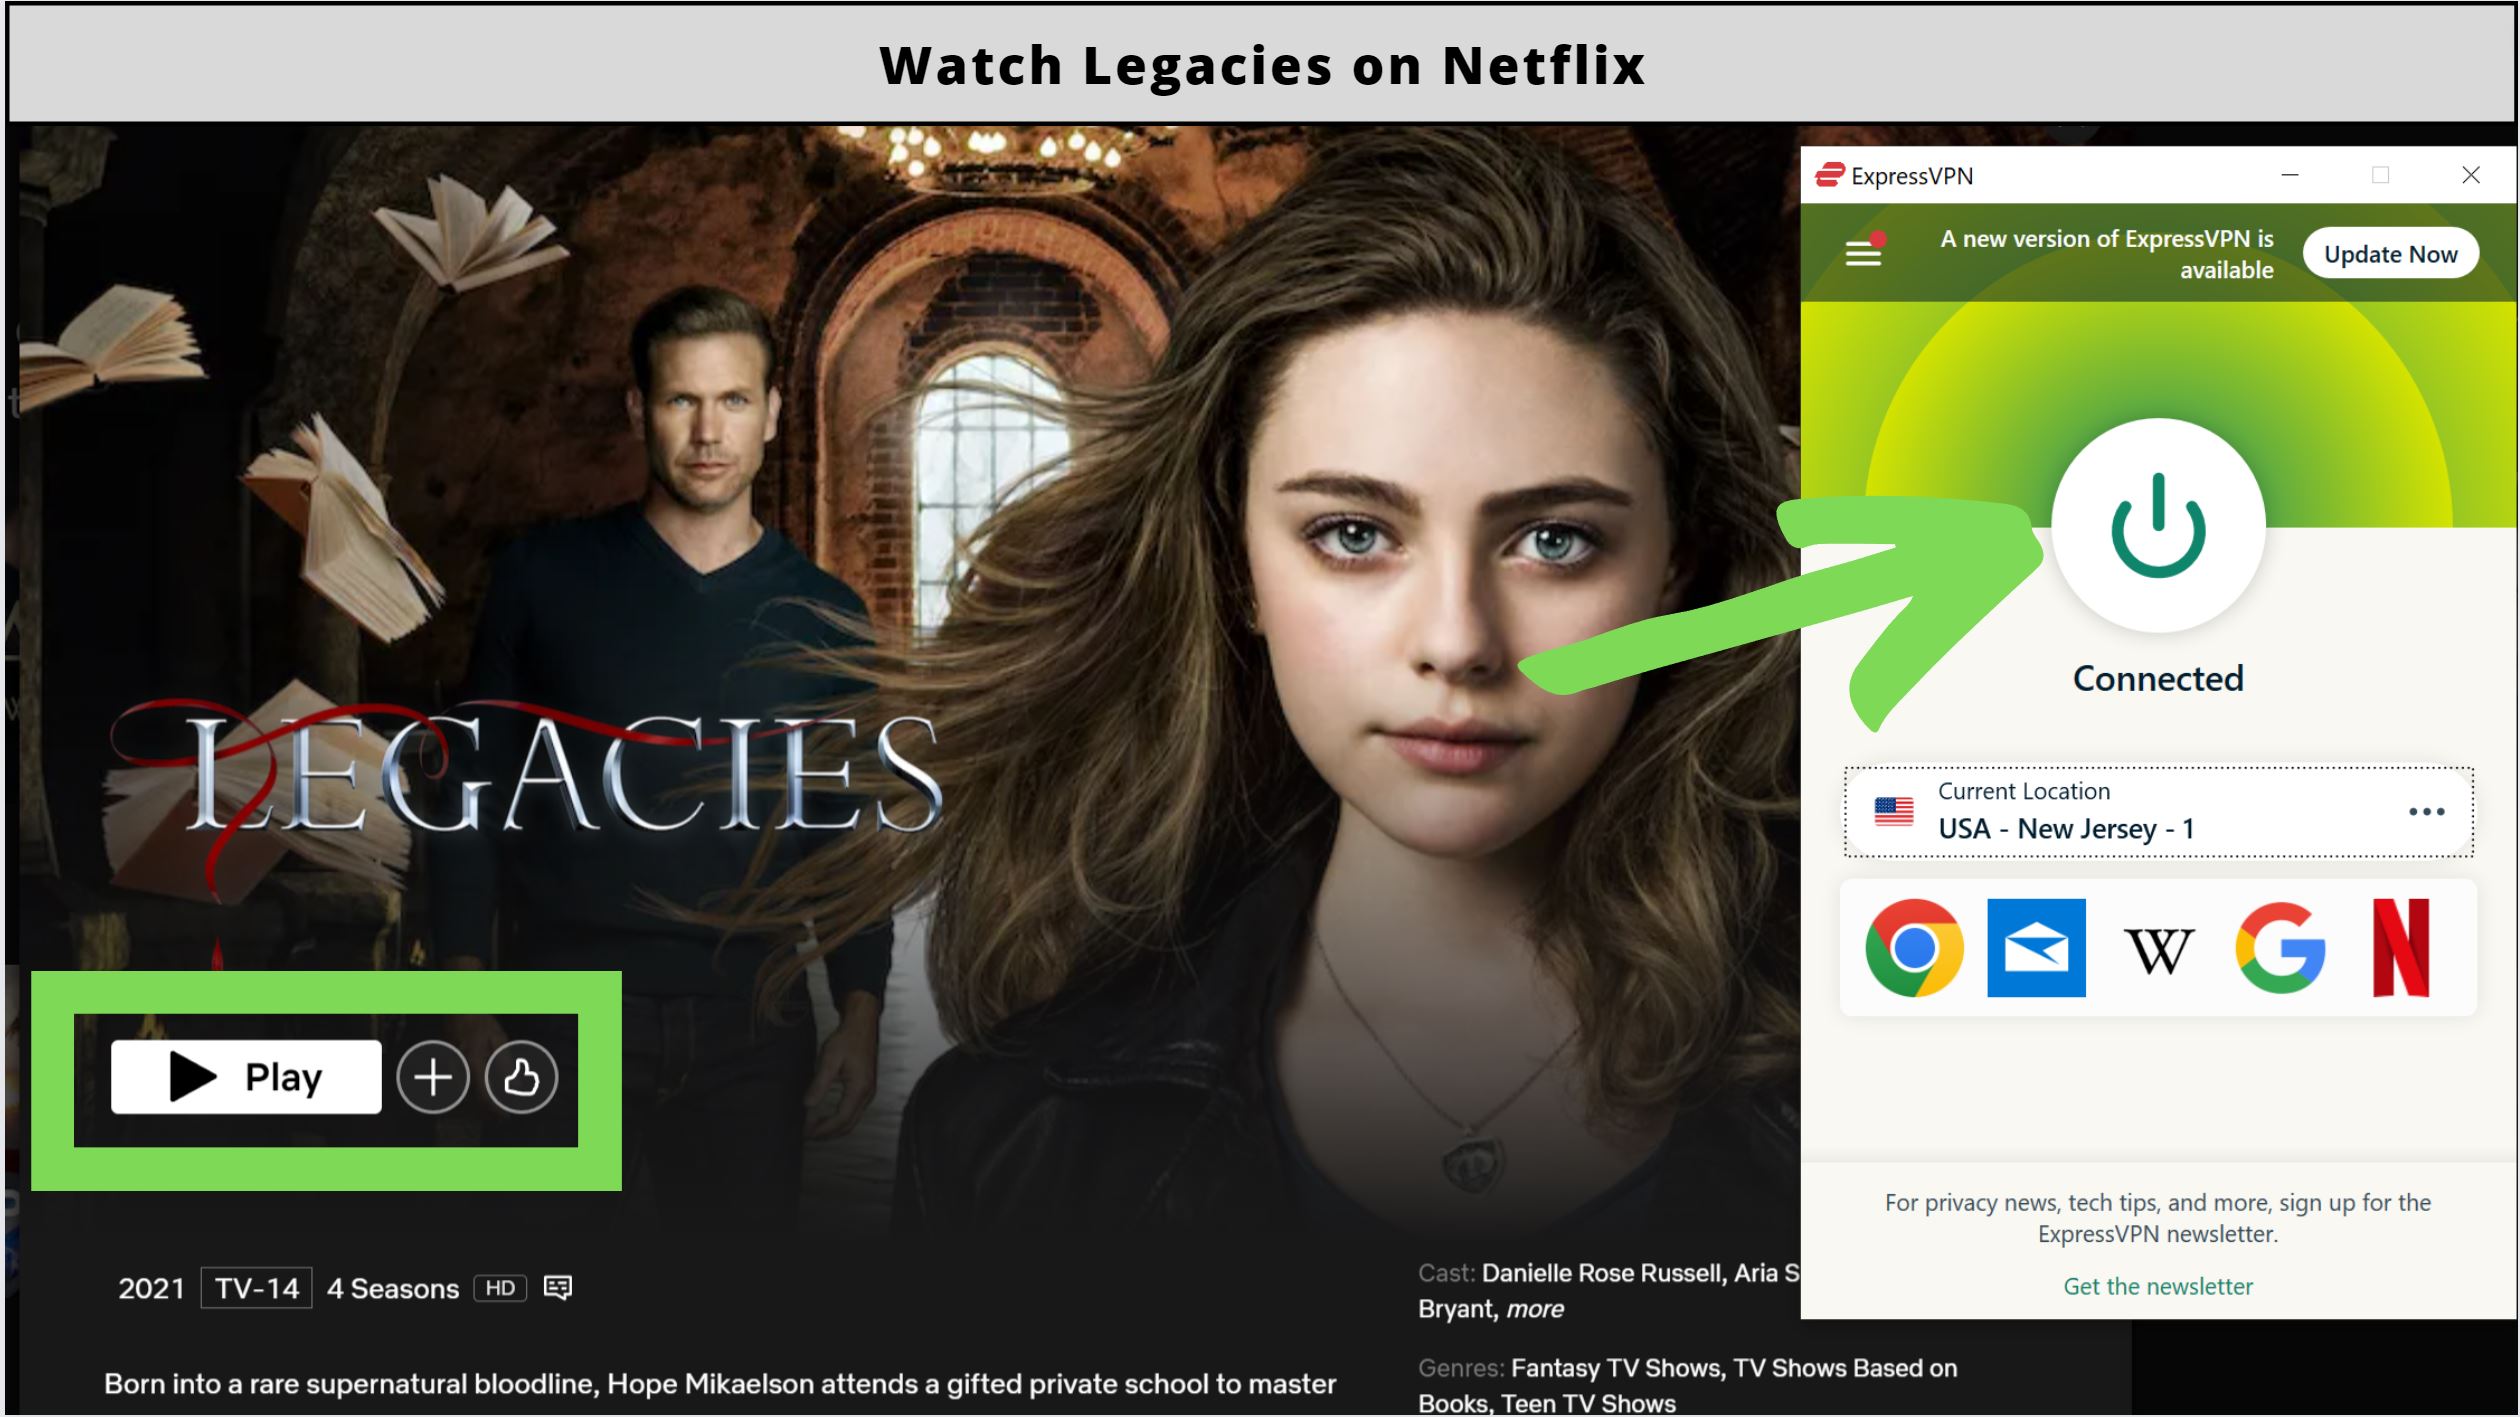 Legacies Season 4 on Netflix